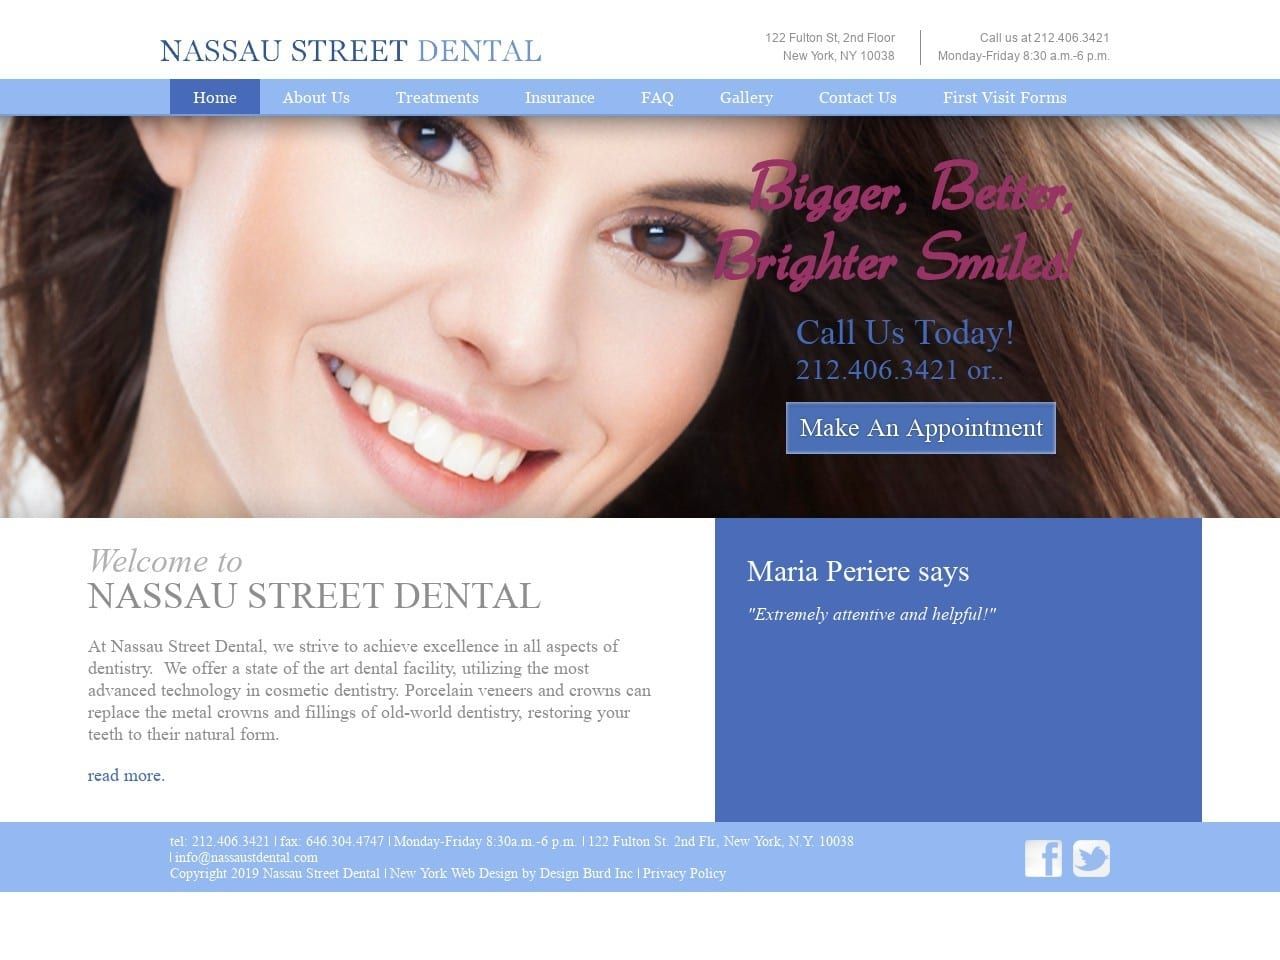 Nassau Street Dental Associates Website Screenshot from nassaustdental.com